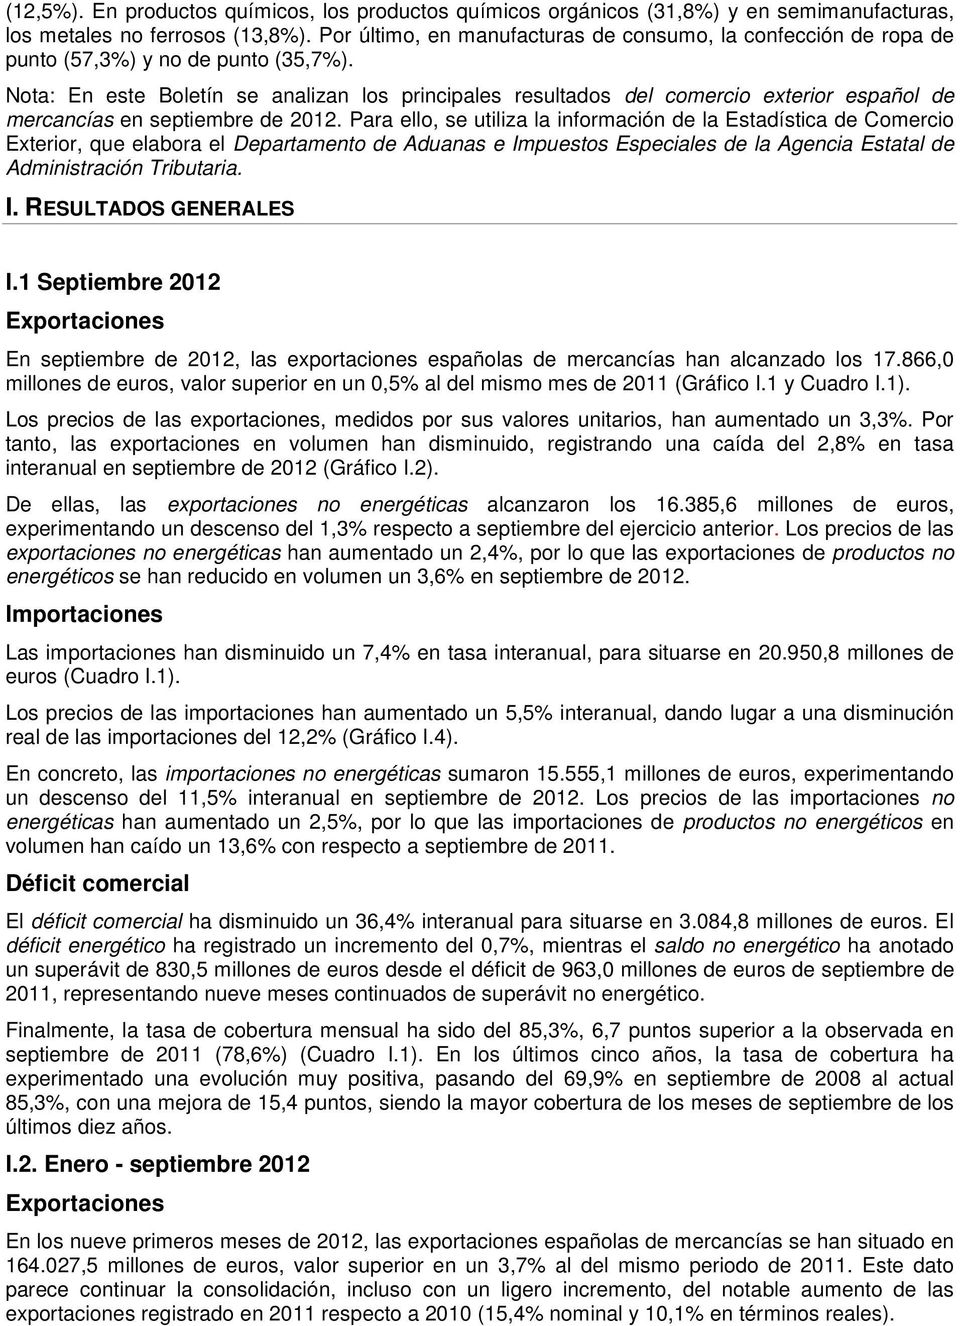 Nota: En este Boletín se analizan los principales resultados del comercio exterior español de mercancías en septiembre de 2012.